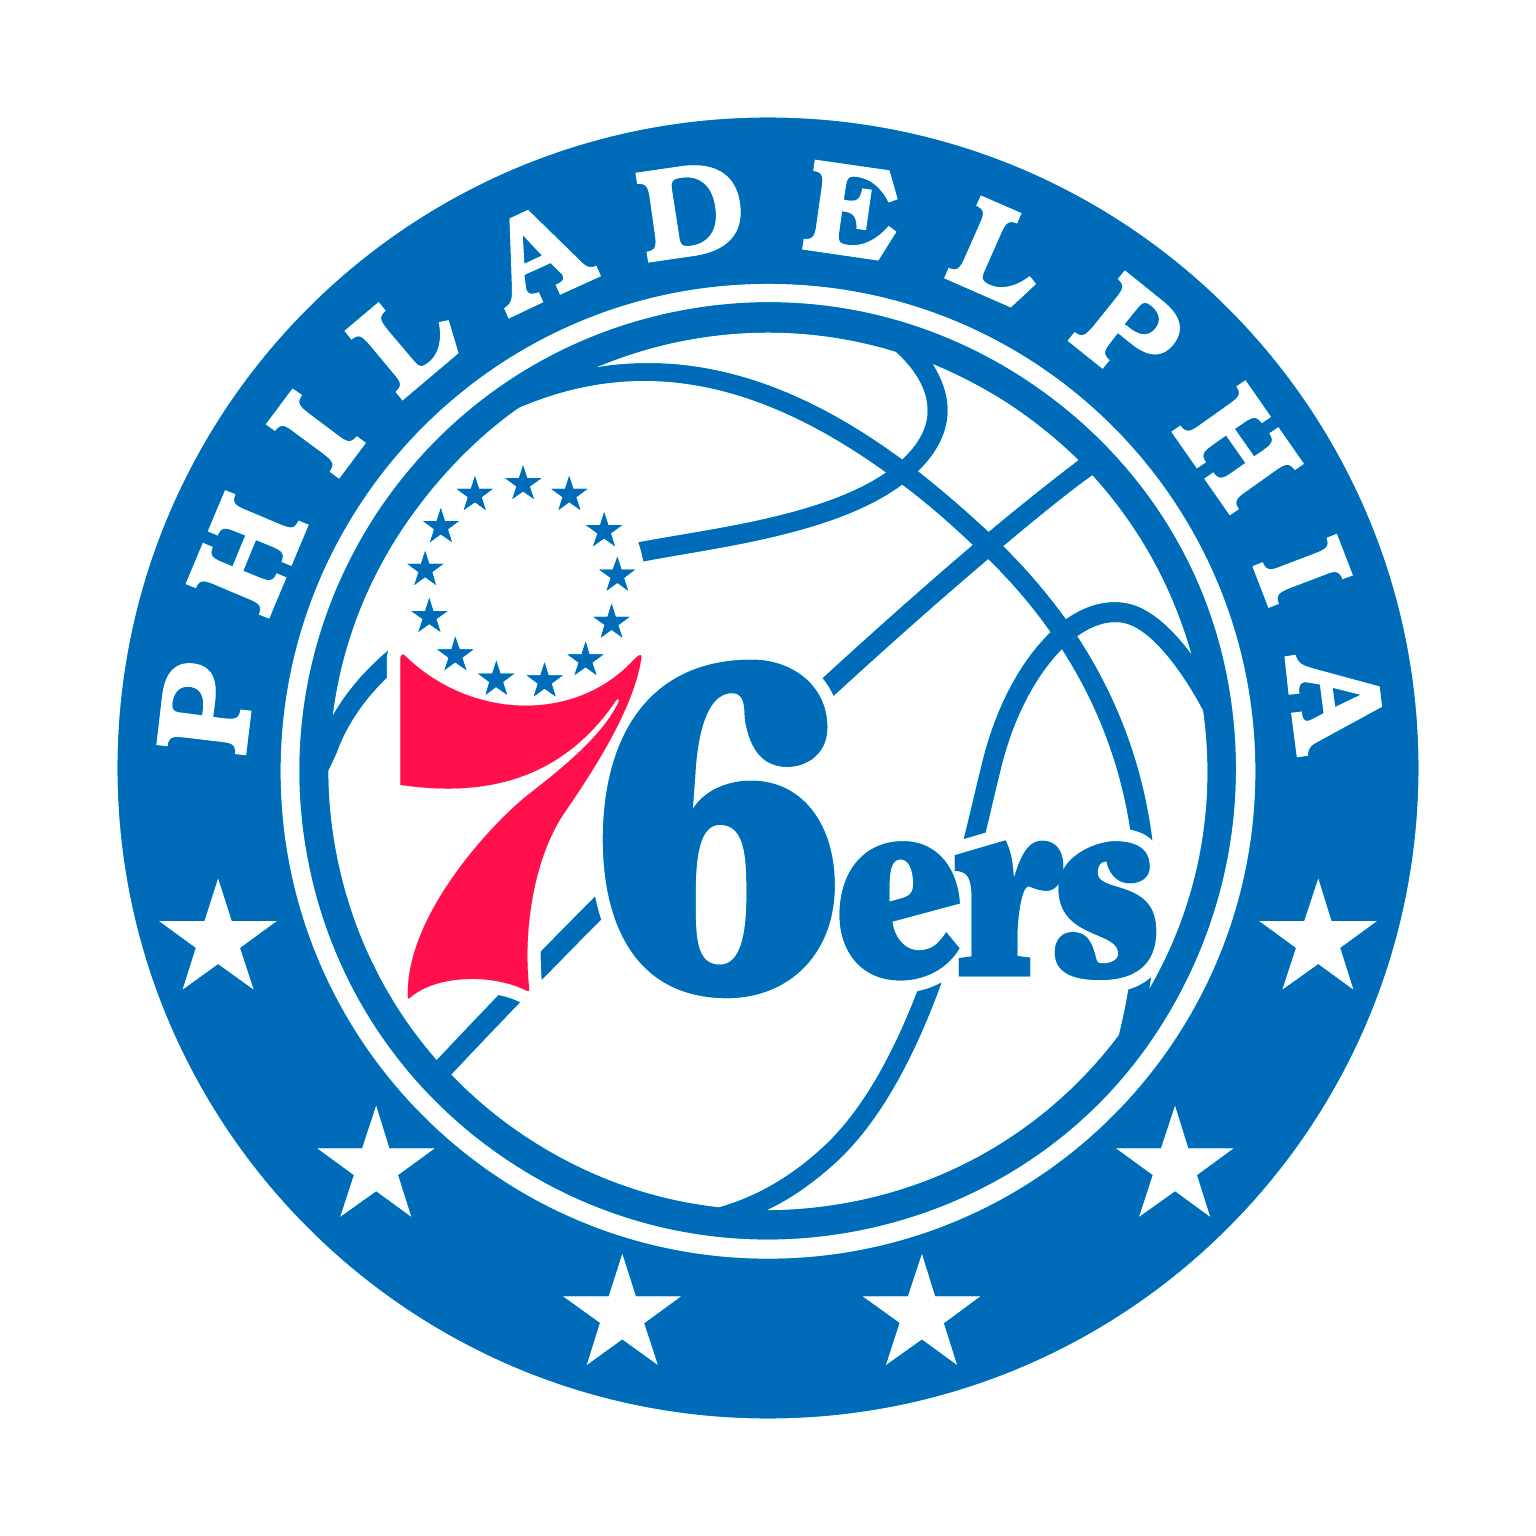 Philadelphia 76ers rumors